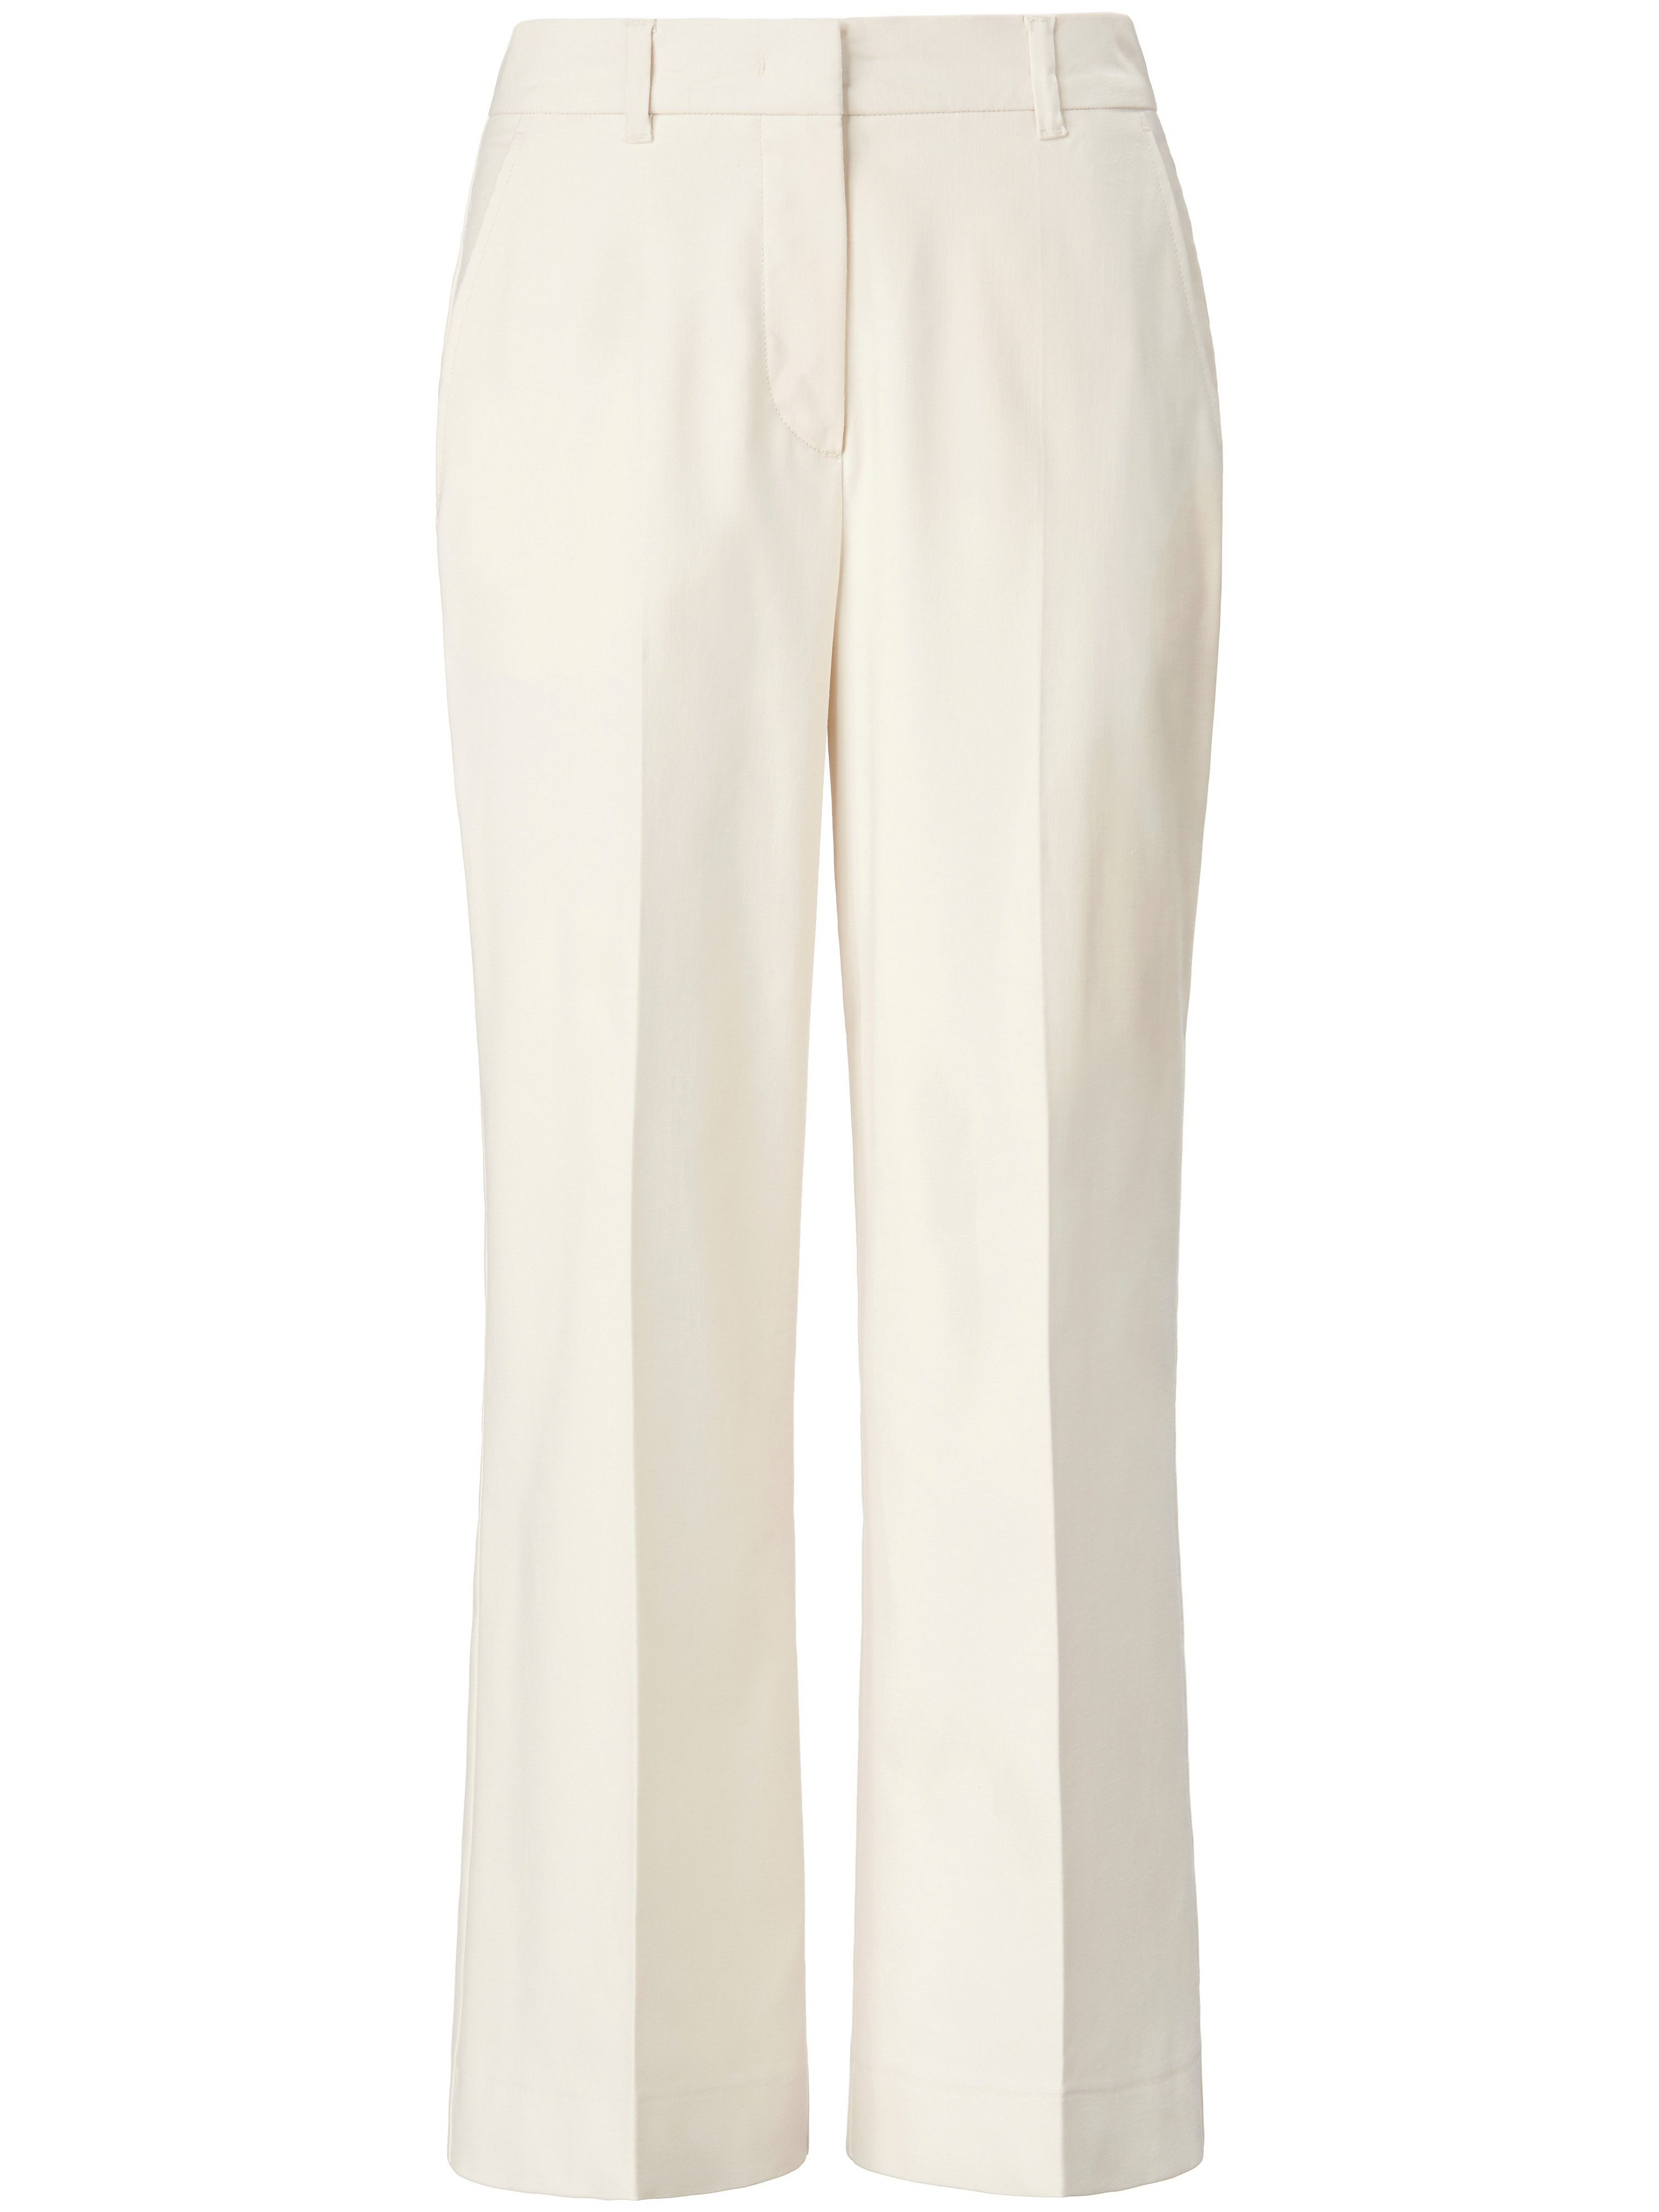 Le pantalon 7/8 coton stretch  St. Emile blanc taille 40